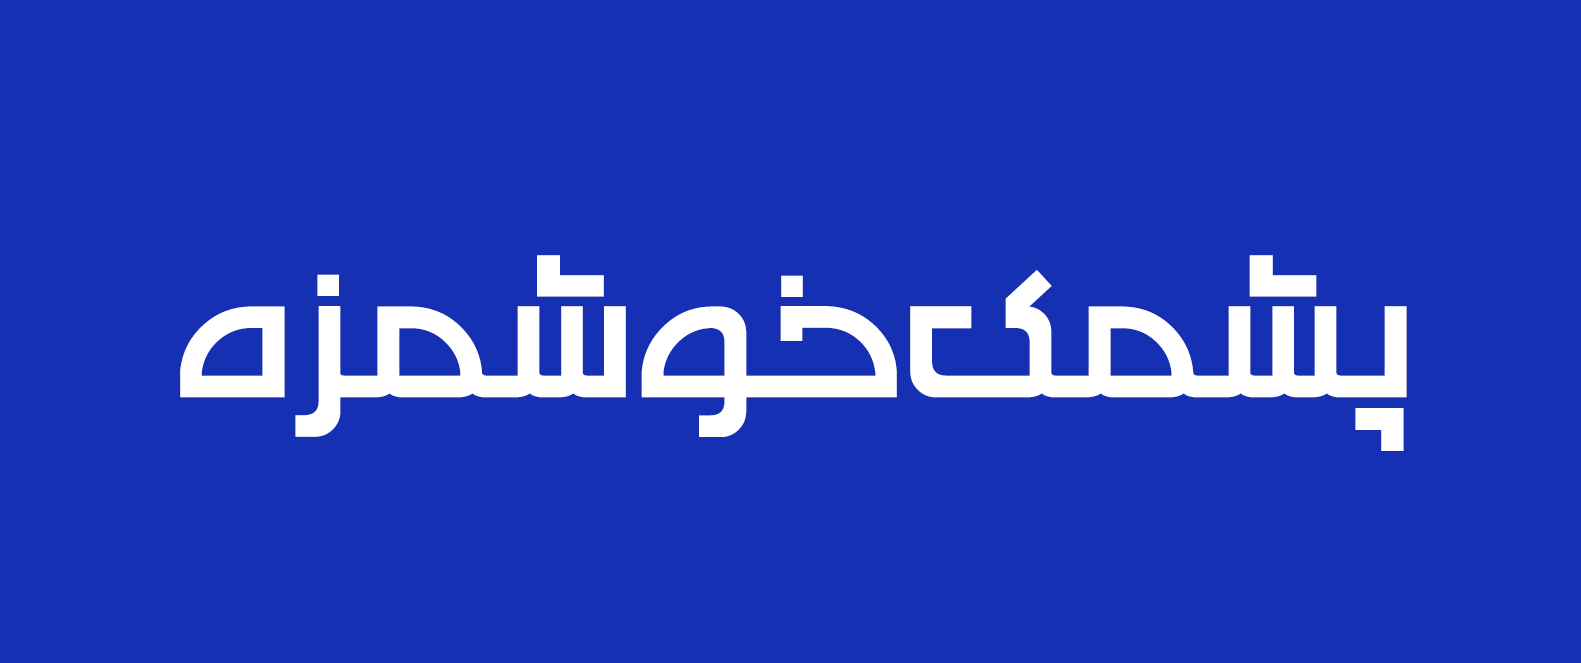 دانلود فونت فارسی چشمه